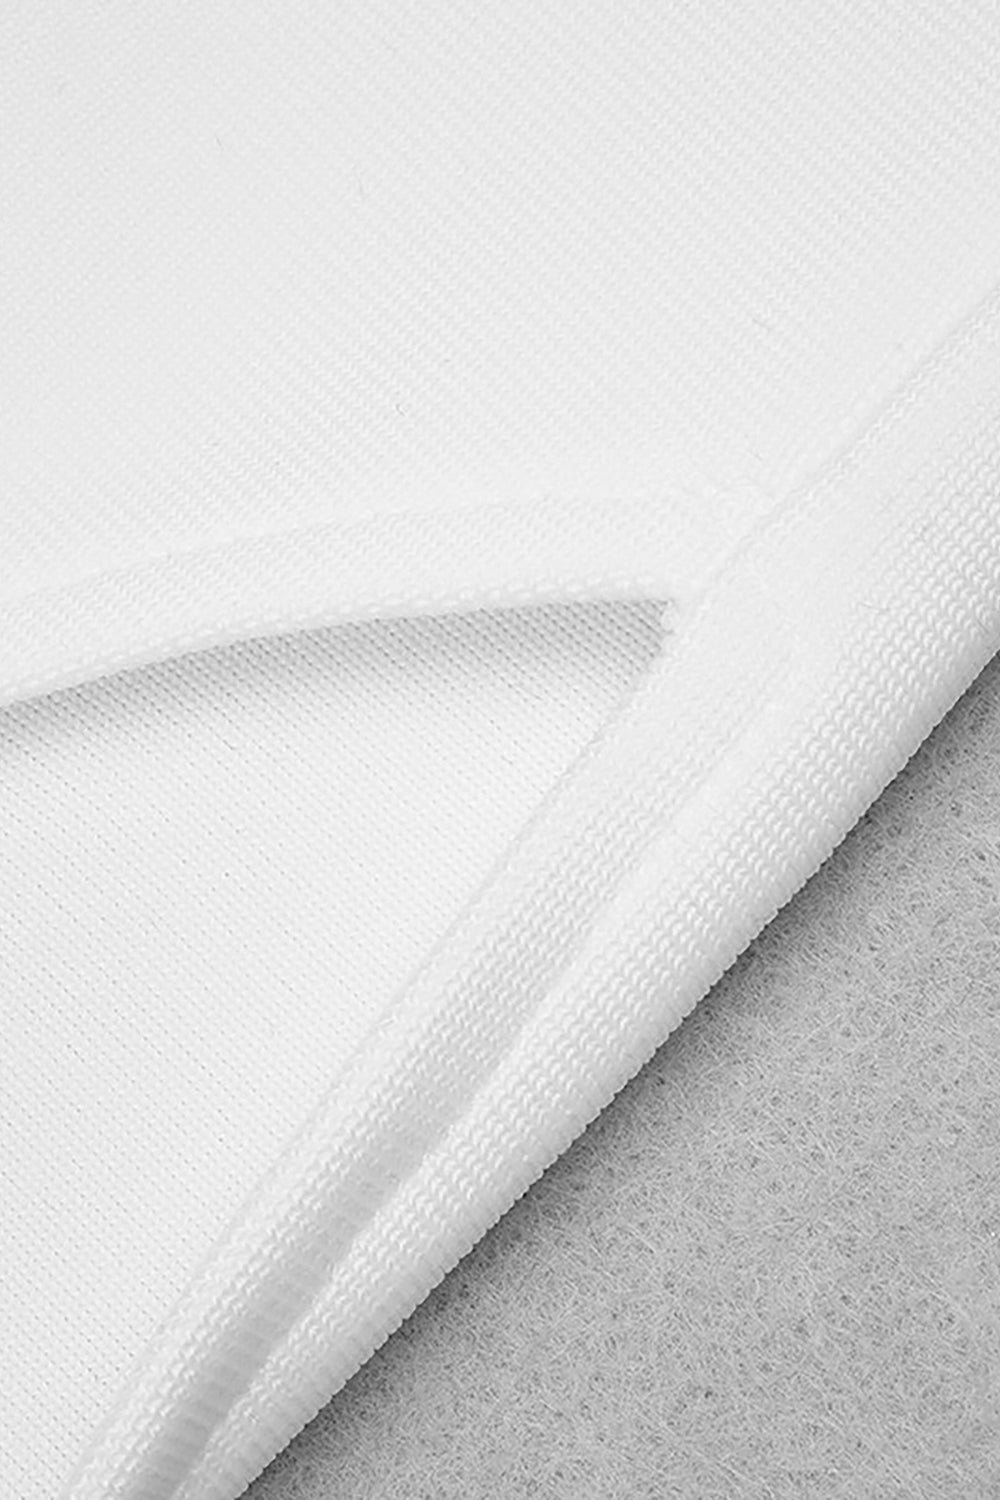 Vestido blanco de manga larga con un hombro descubierto y abertura alta